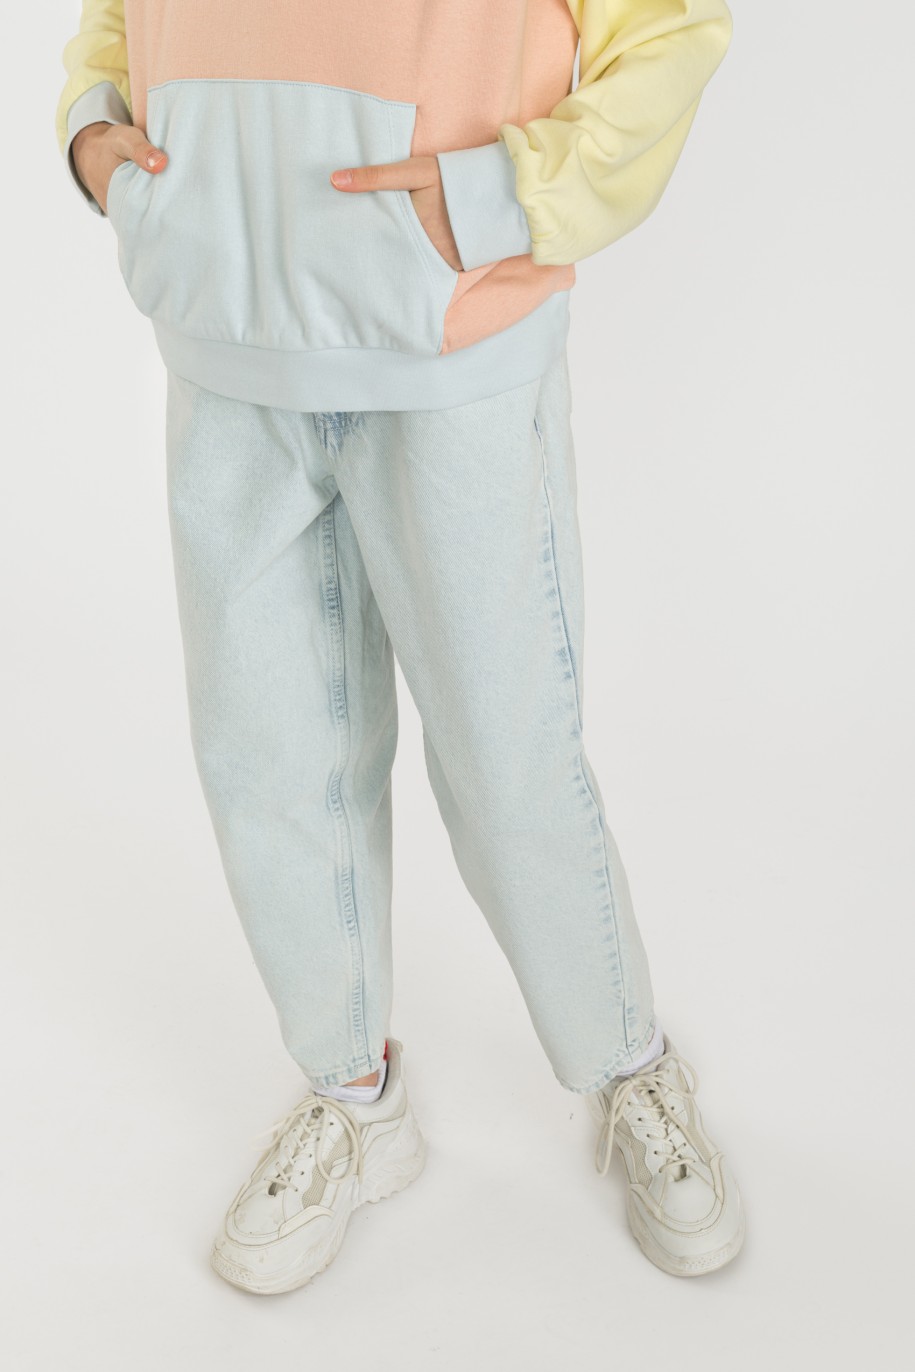 Jeansowe spodnie dla dziewczyny typu slouchy - 32655